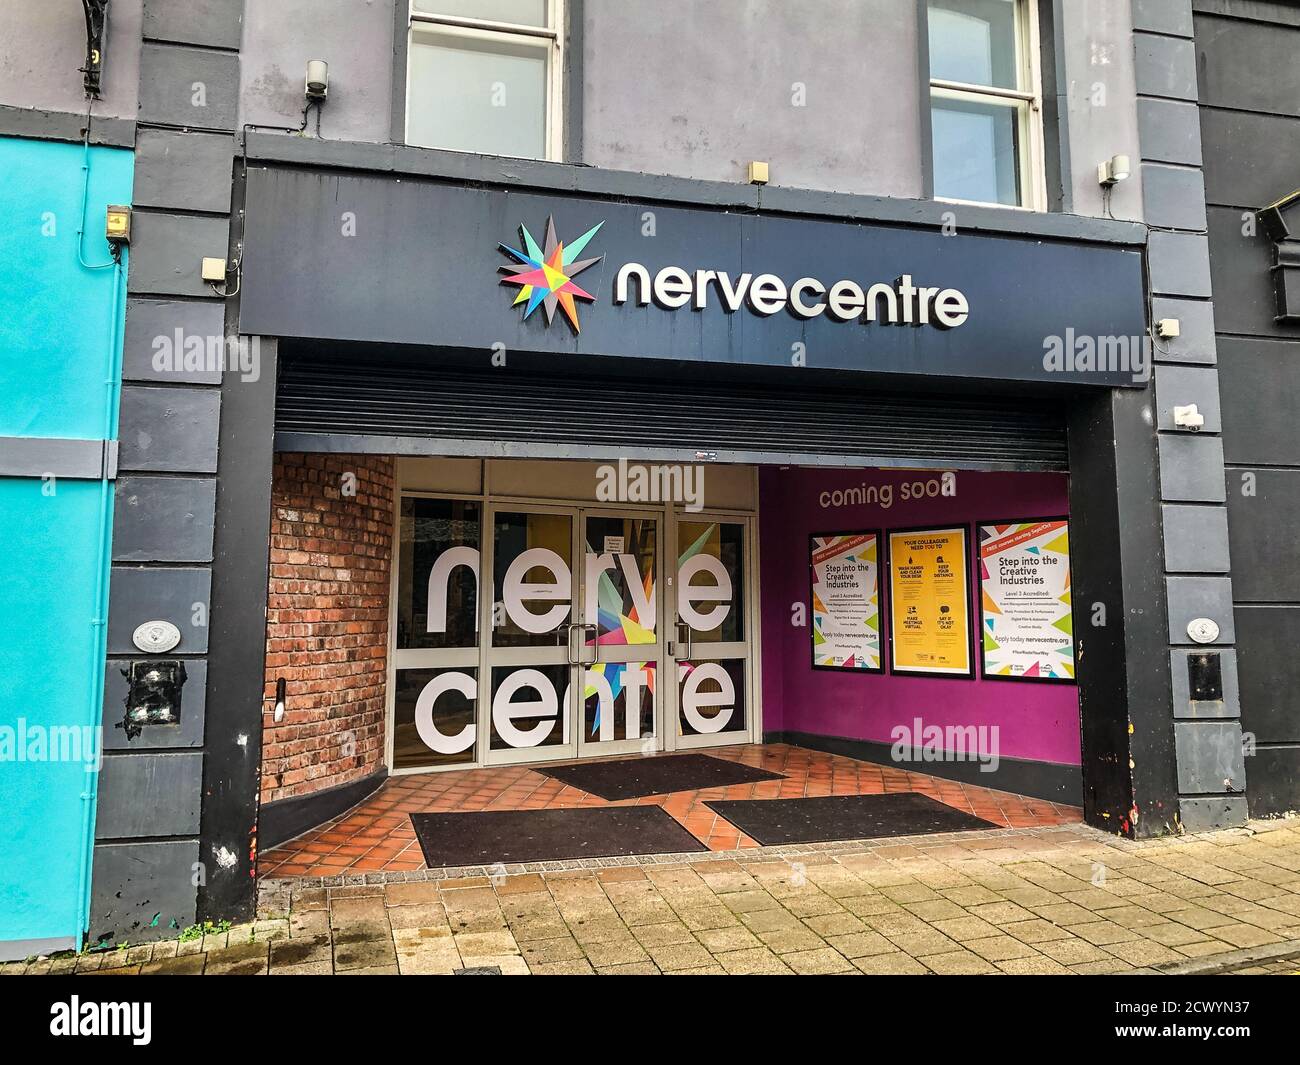 Derry, Irlanda del Norte - 25 de septiembre de 2020: La entrada principal y la señal para el Centro de nervio en Derry Irlanda del Norte. Foto de stock